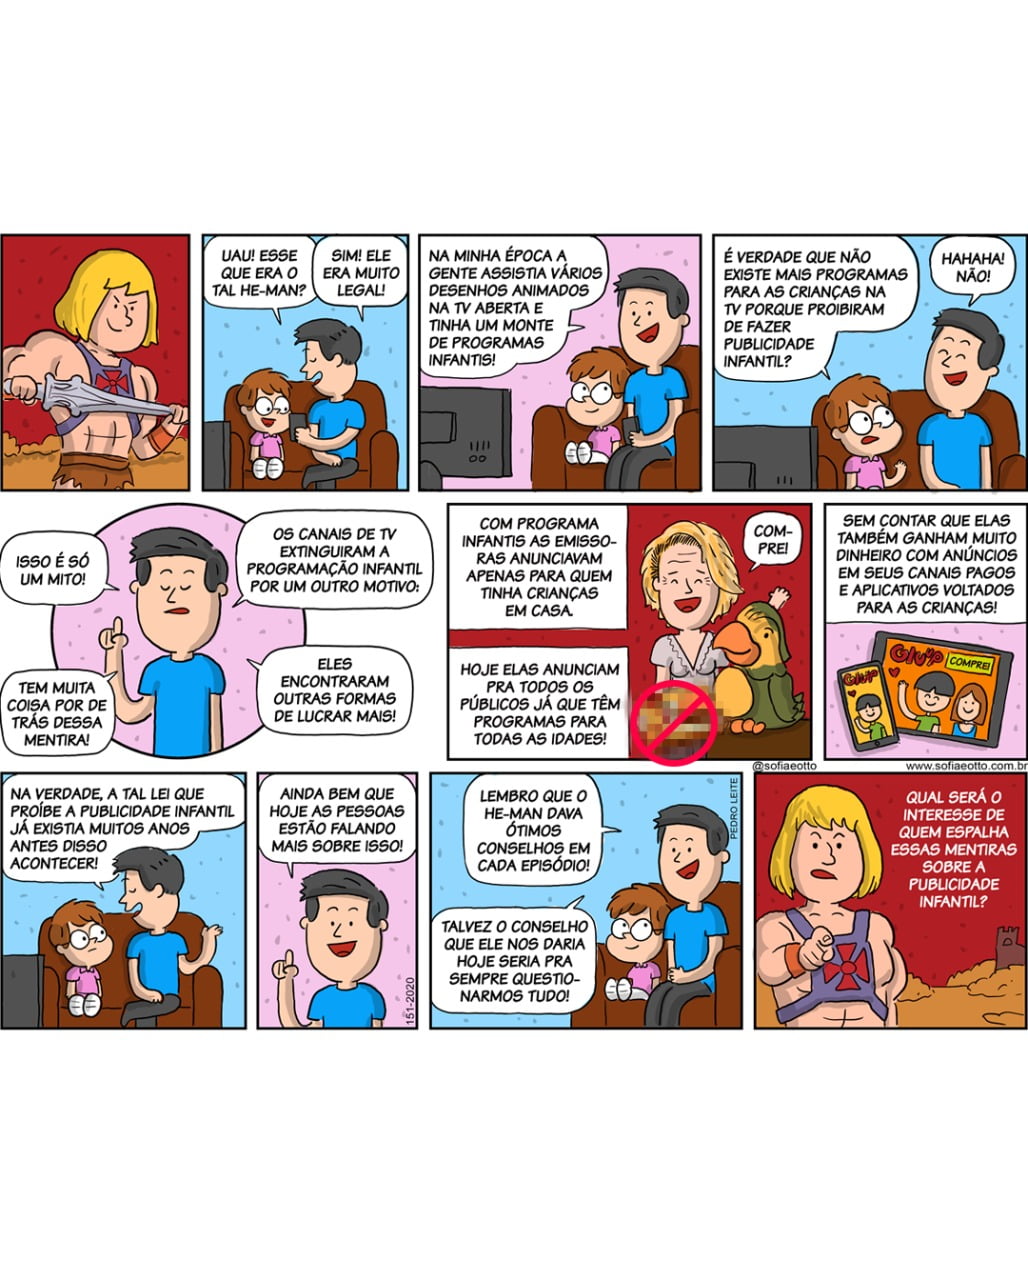 quadrinhos de sofia e otto sobre publicidade infantil